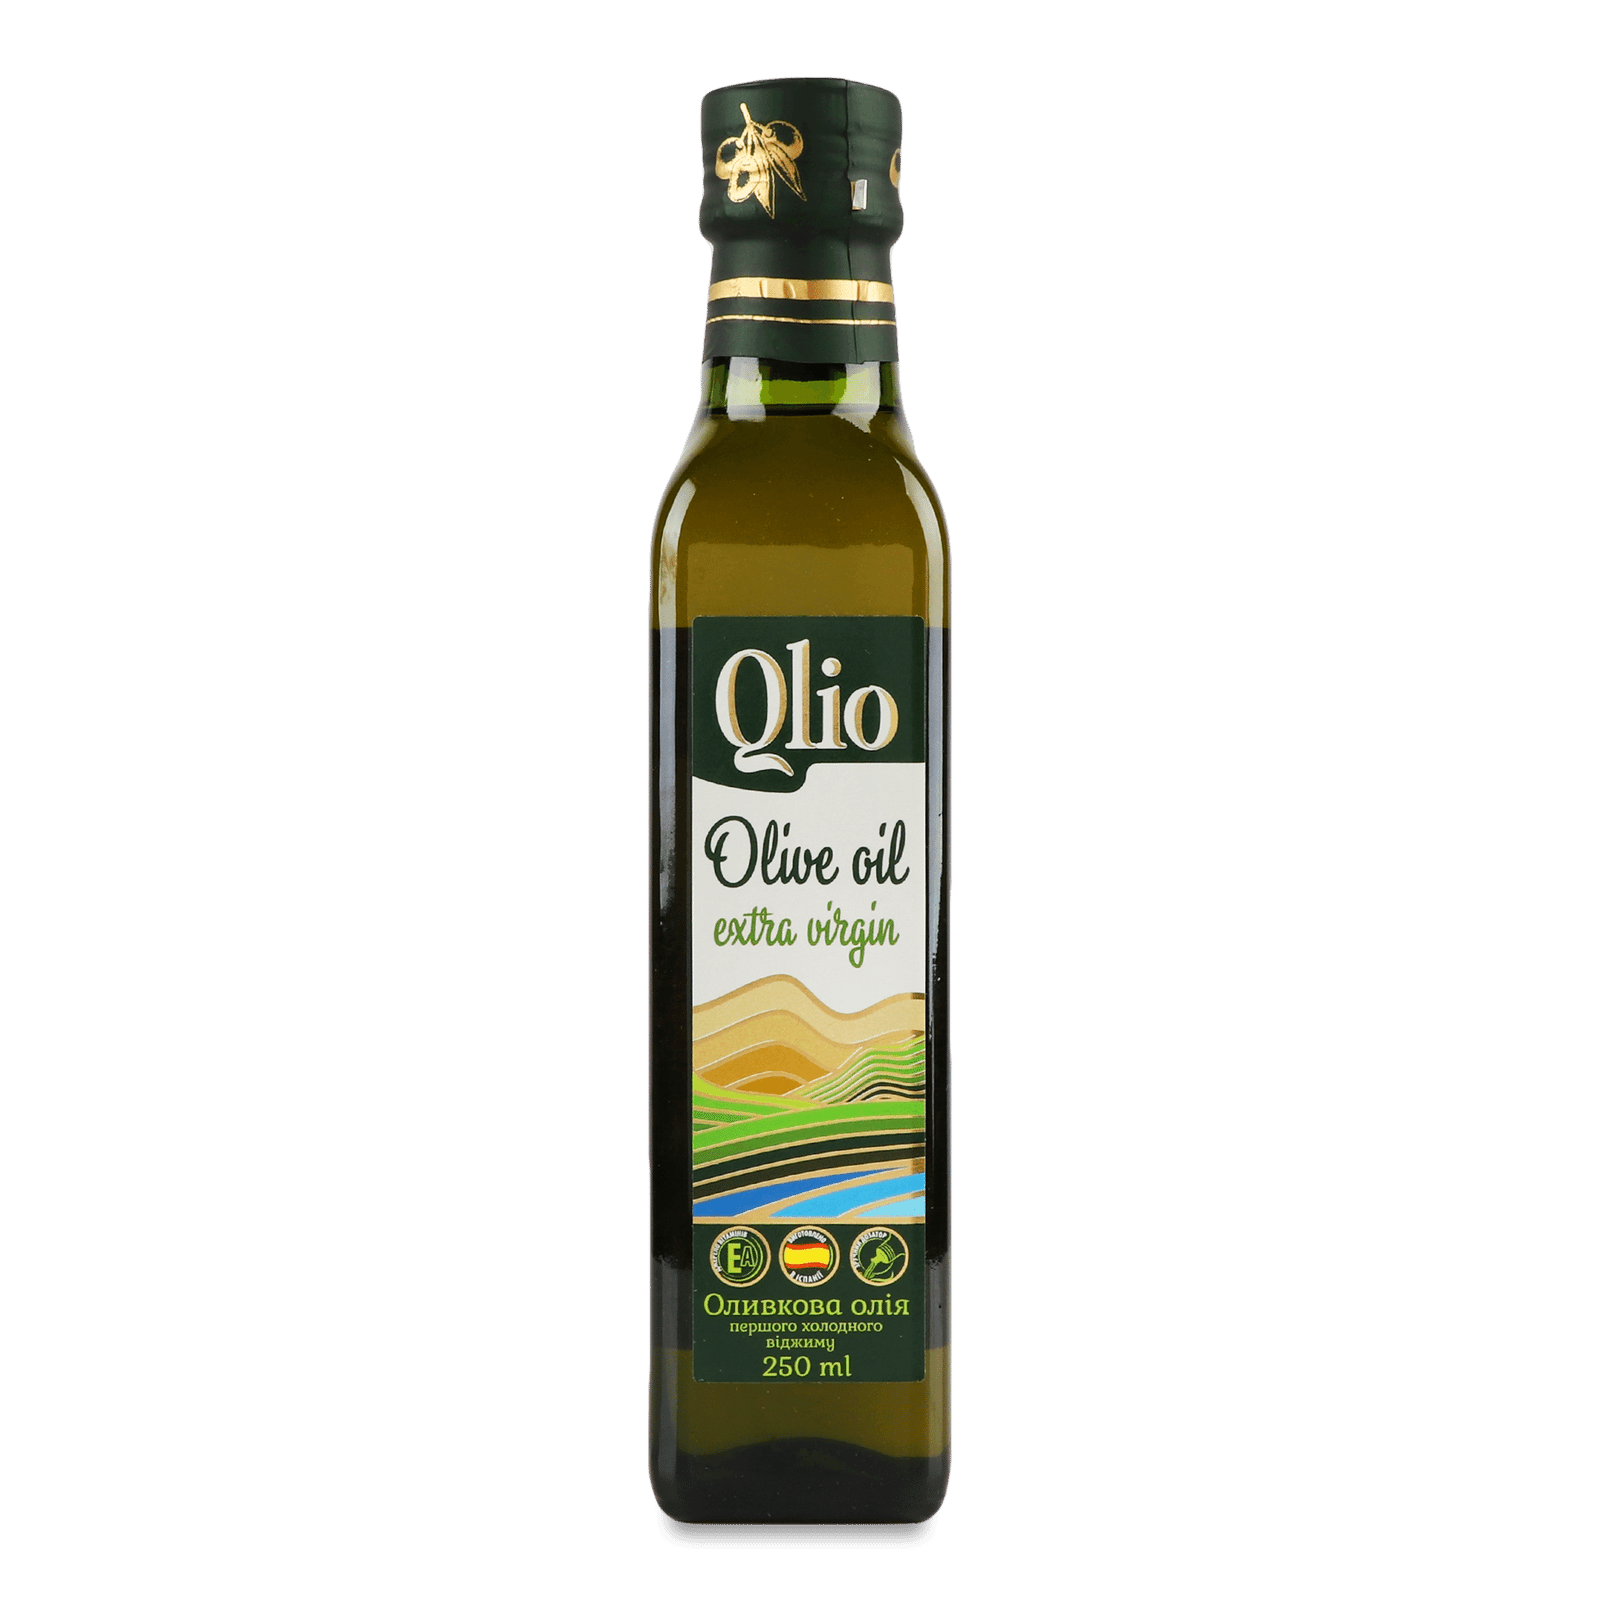 Олія оливкова Qlio першого холодного віджиму - 1